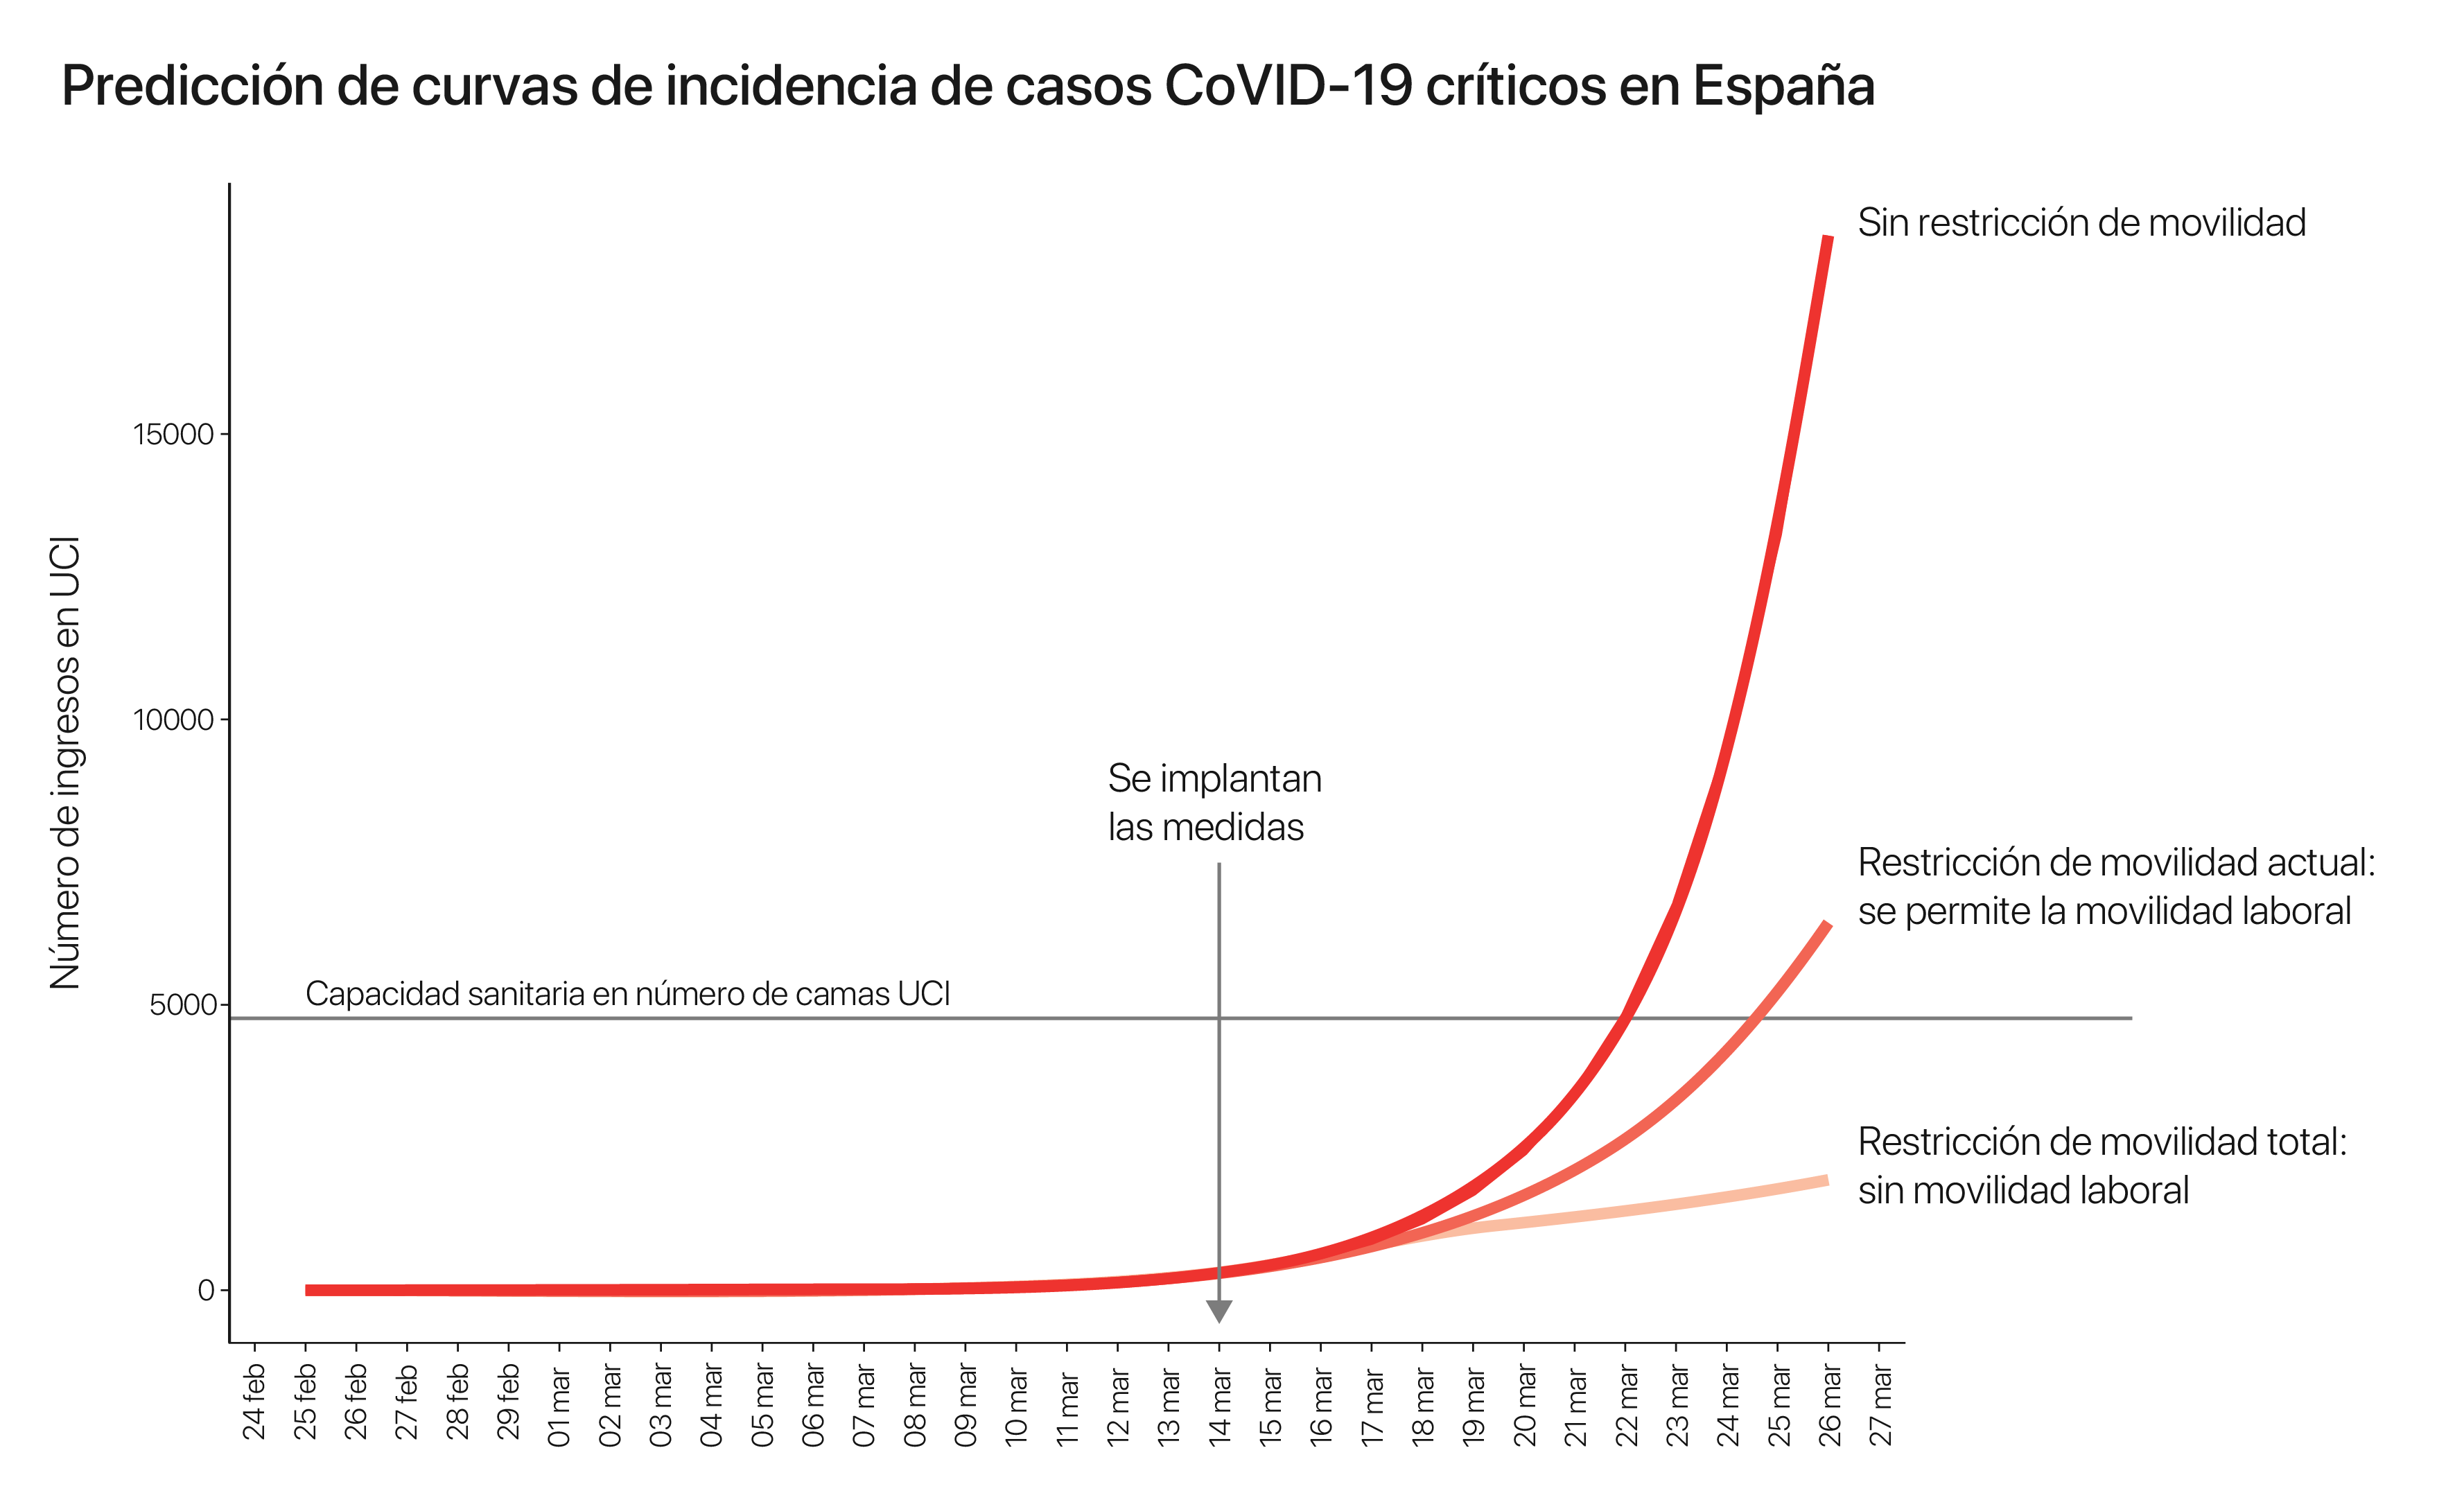 Curvas de incidencia de casos críticos COVID-19 en España.